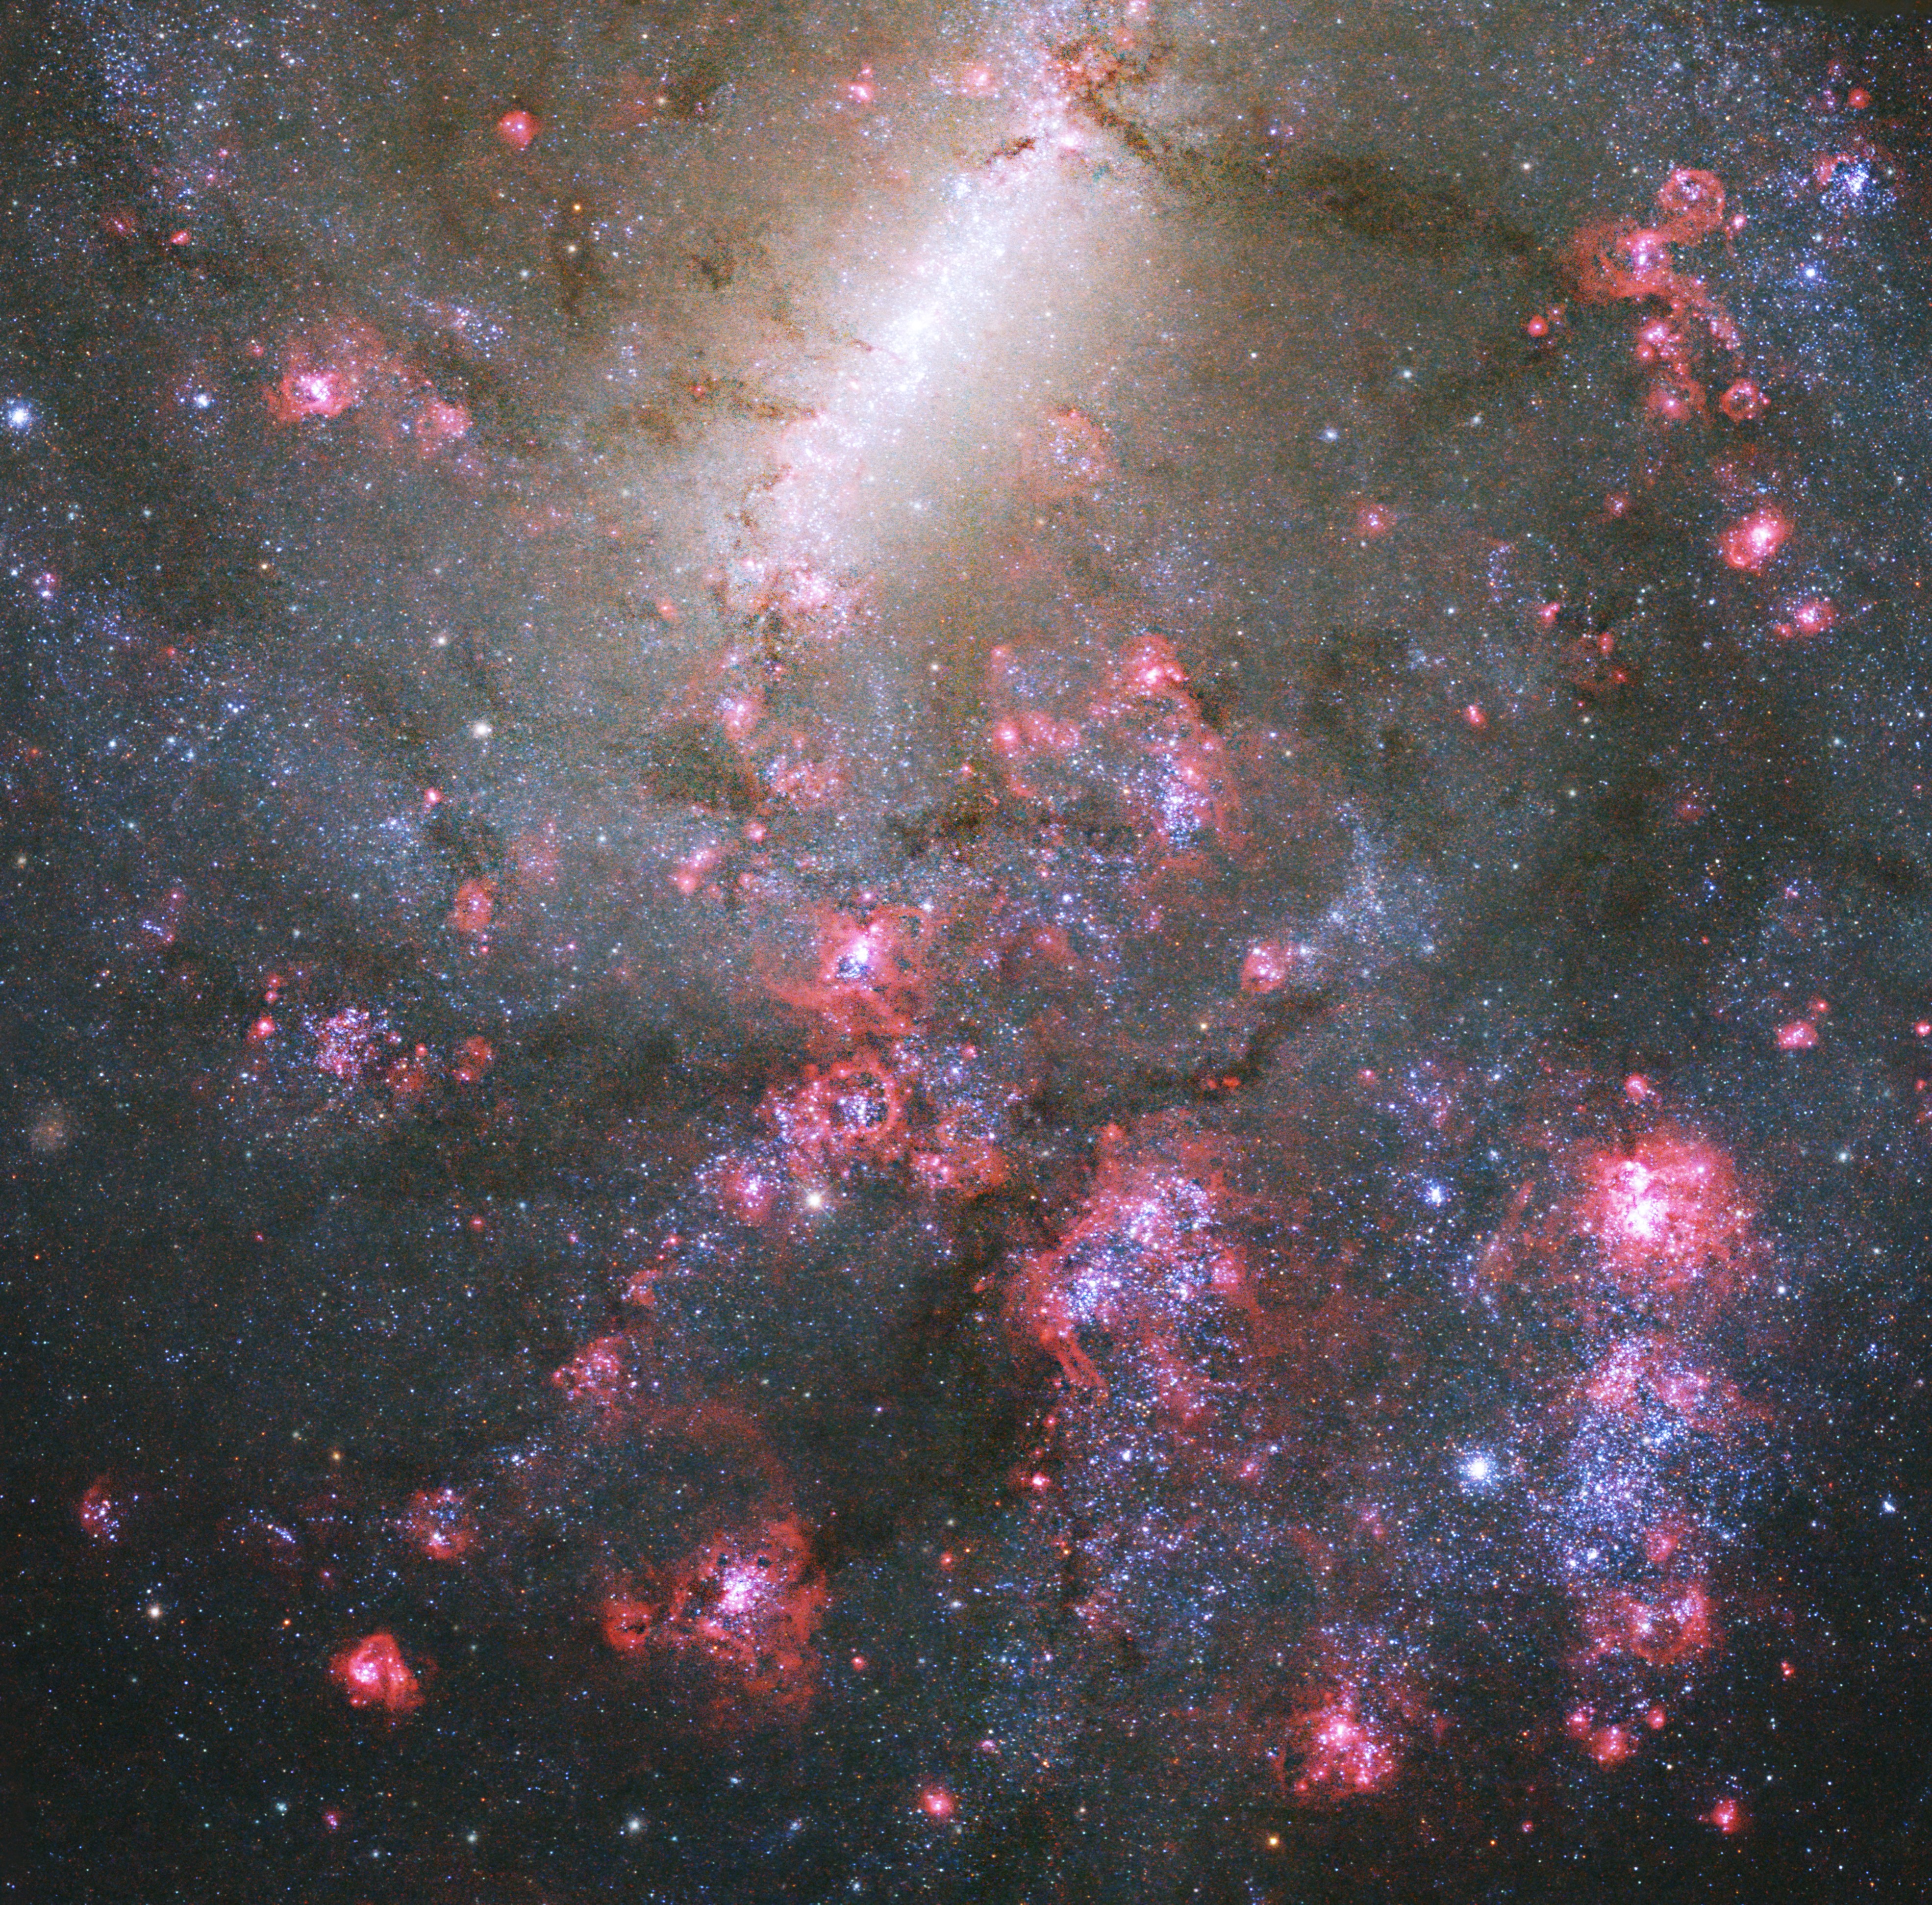 HD 147018 b - NASA Science